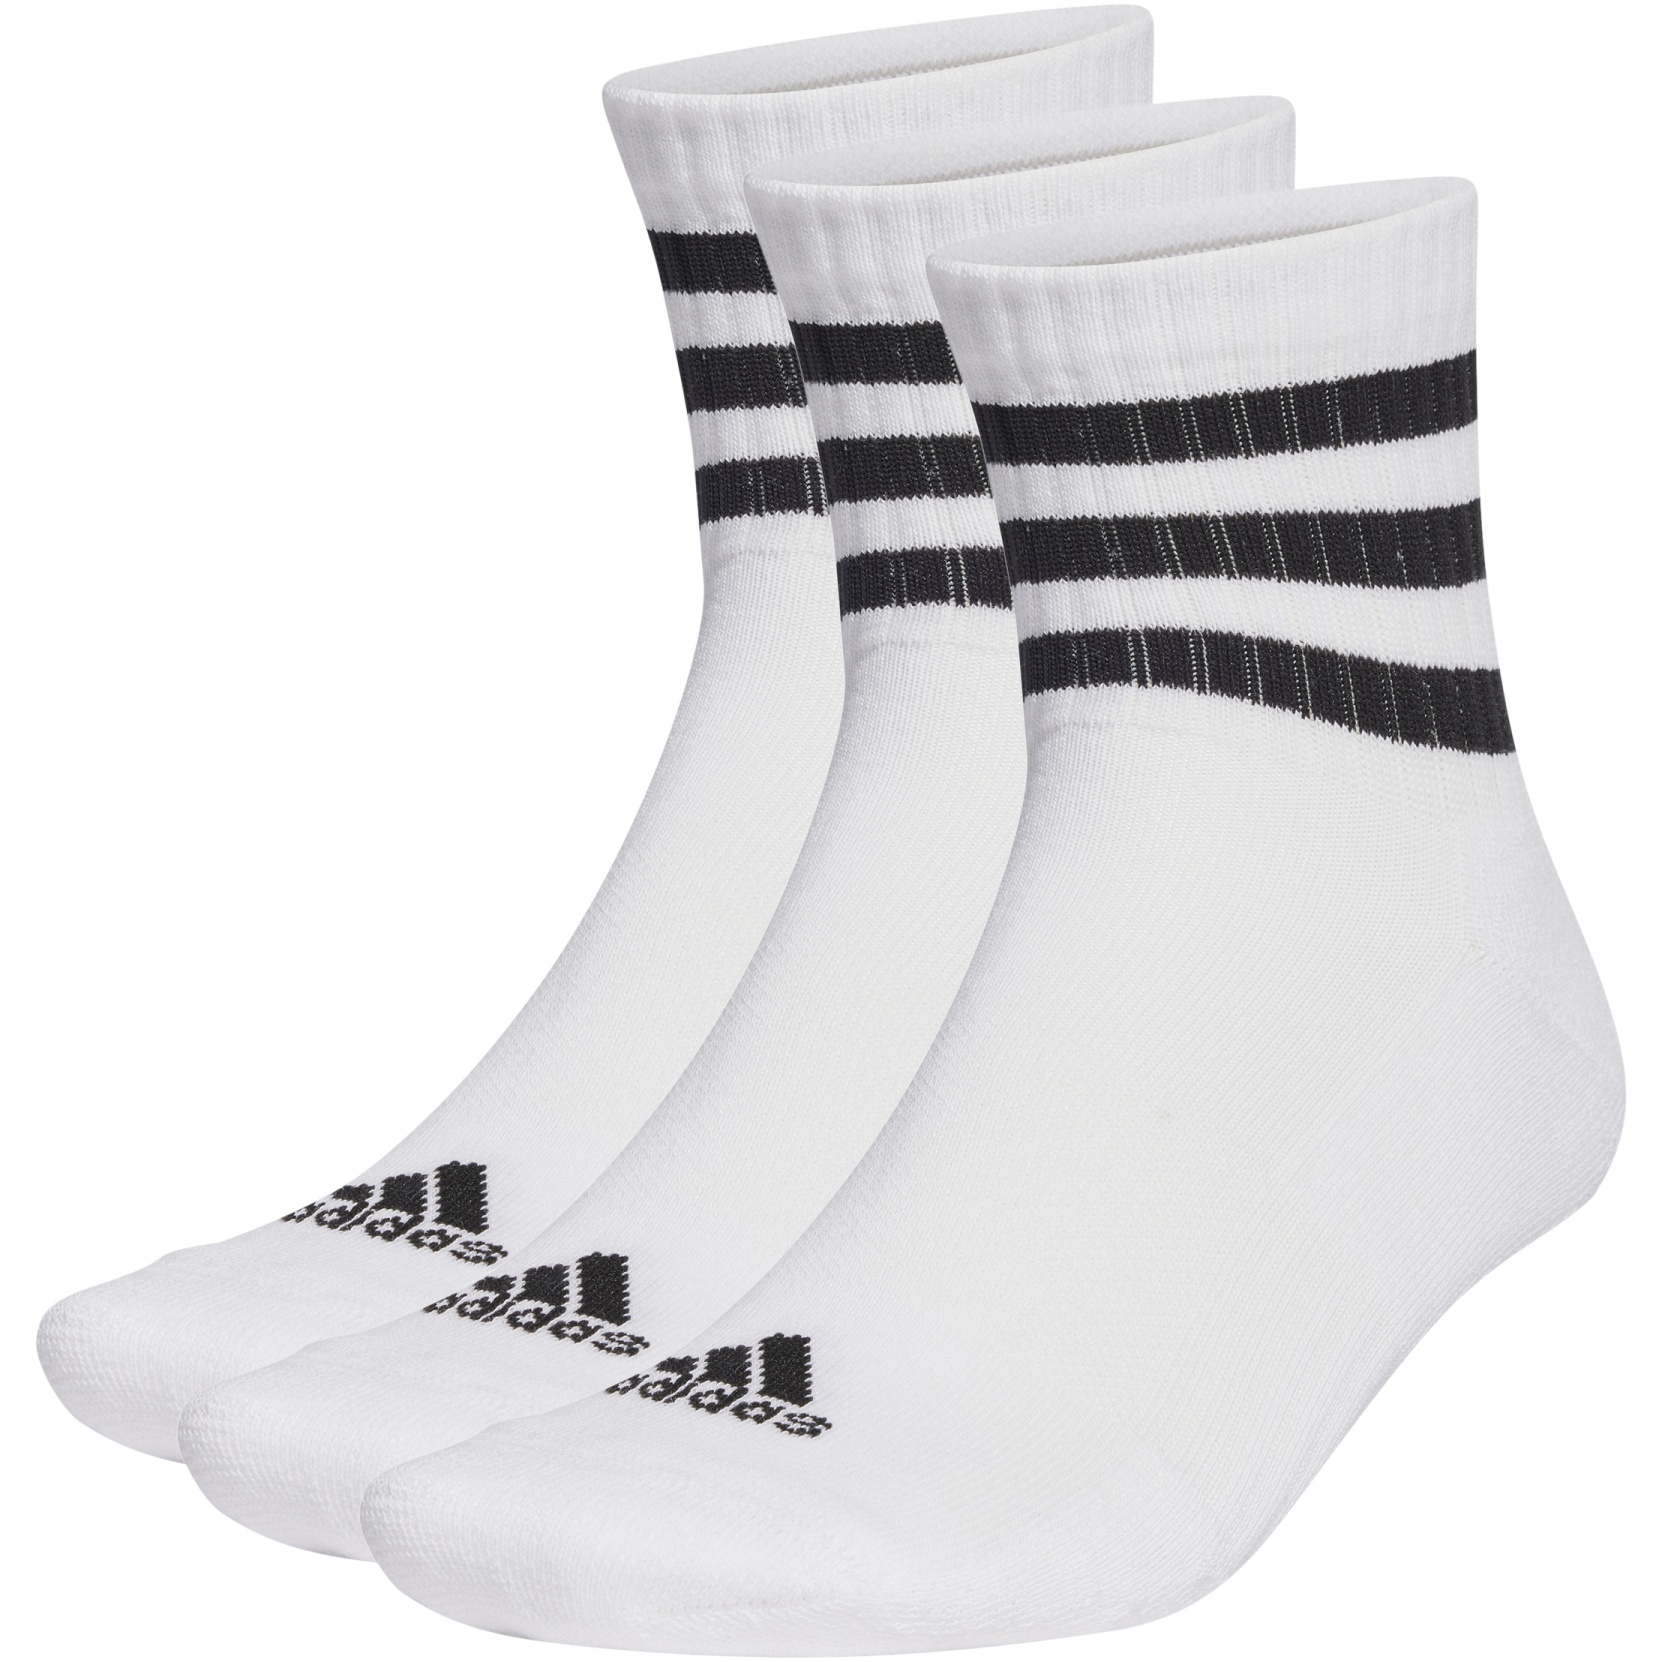 Produktbild von adidas 3-Streifen Cushioned Mid Cut Socken - 3 Paar - weiß/schwarz HT3456